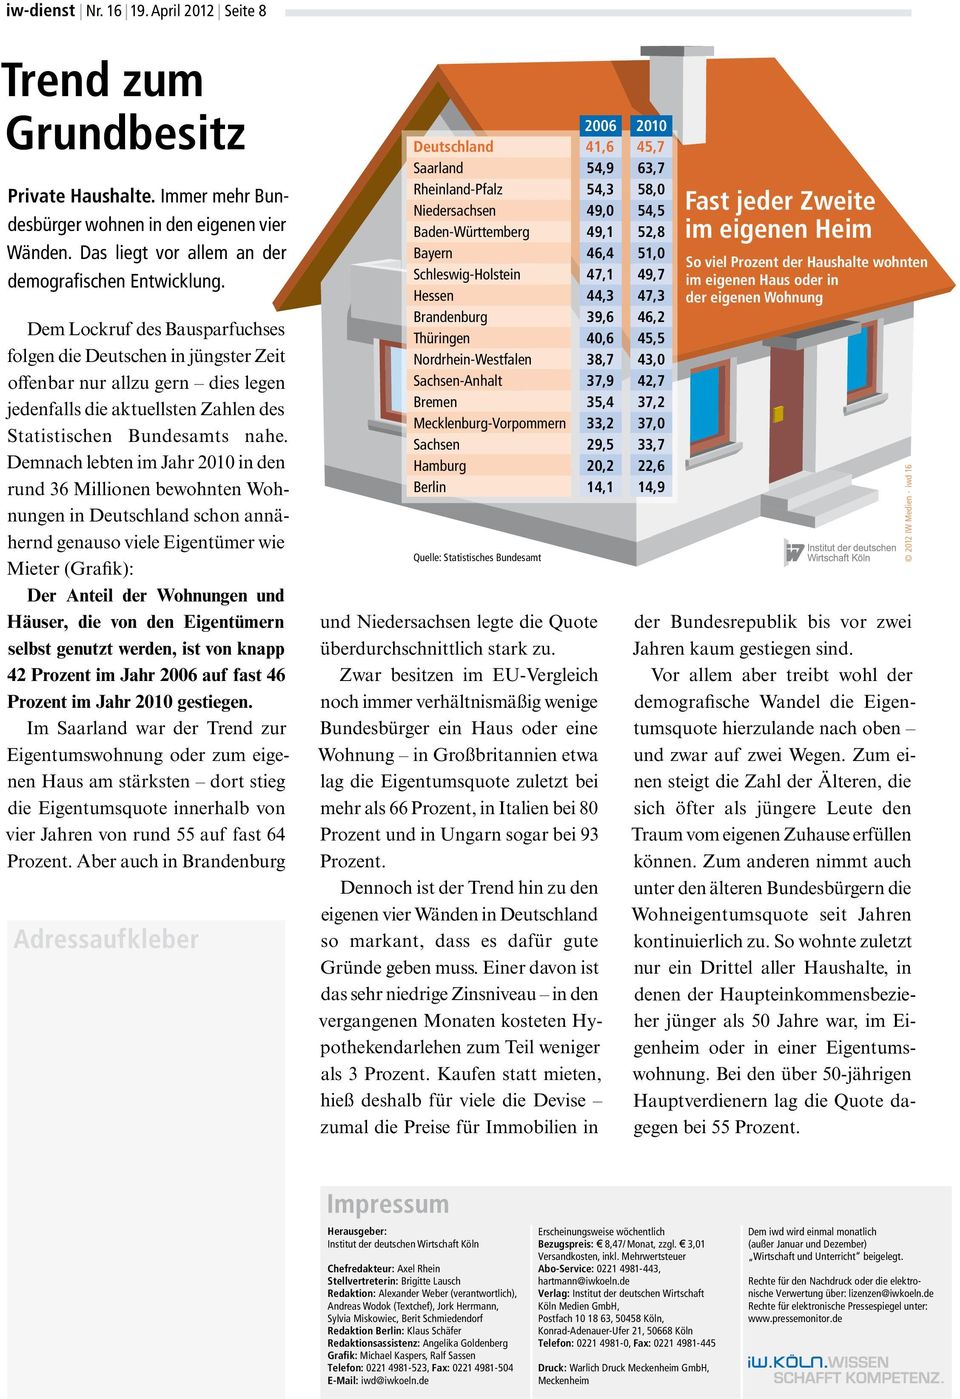 Demnach lebten im Jahr 21 in den rund 36 Millionen bewohnten Wohnungen in Deutschland schon annähernd genauso viele Eigentümer wie Mieter (Grafik): Der Anteil der Wohnungen und Häuser, die von den